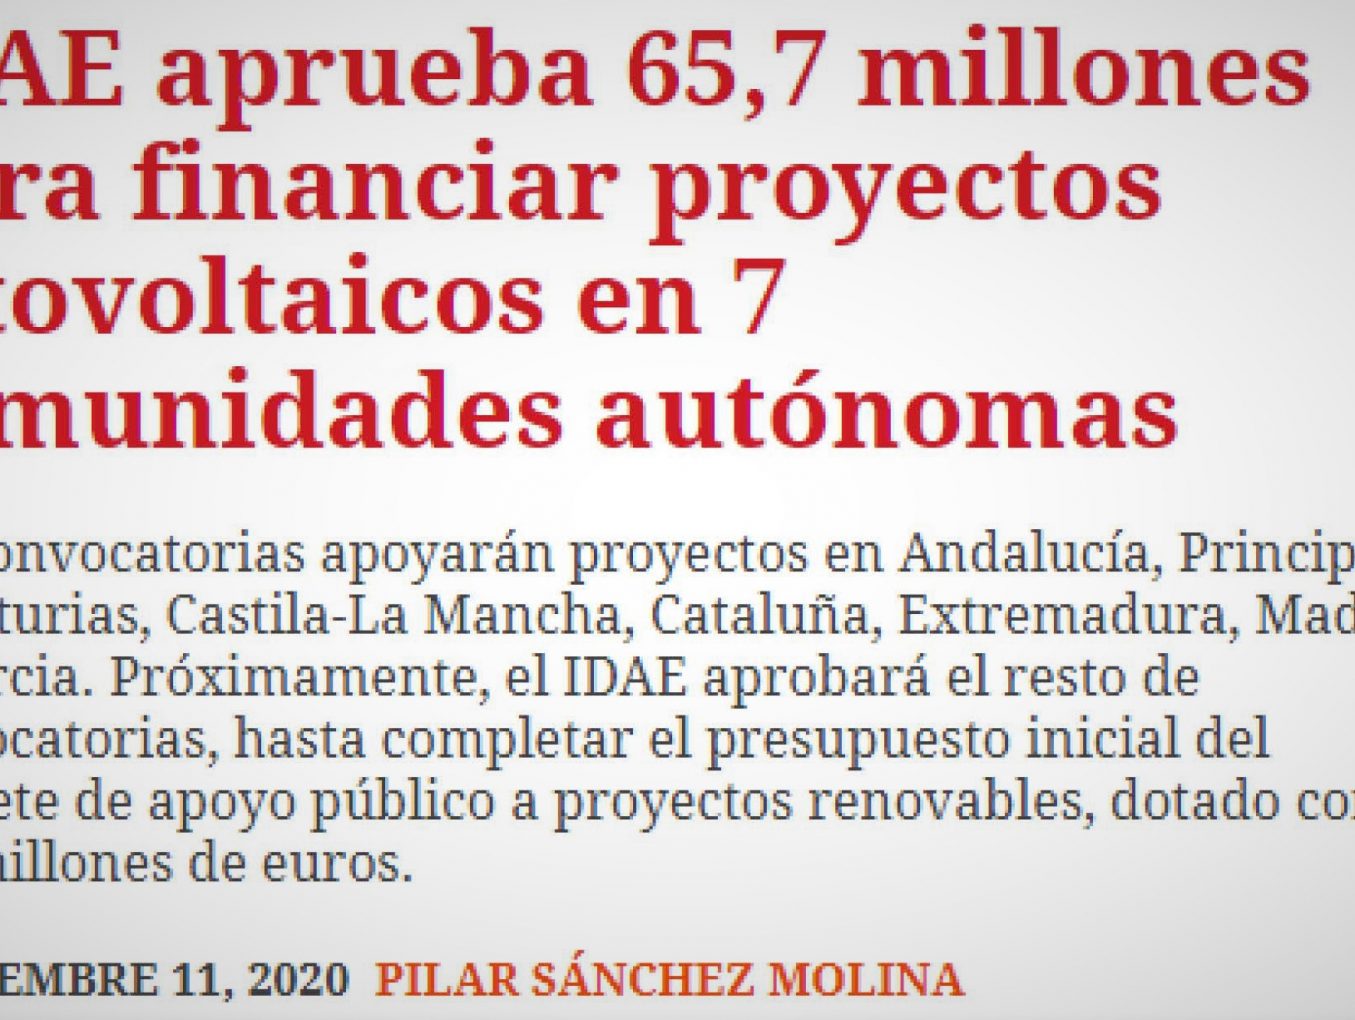 Ahora es el momento de que Andalucía Genere Energía. Que se agilicen las autorizaciones administrativas!!!